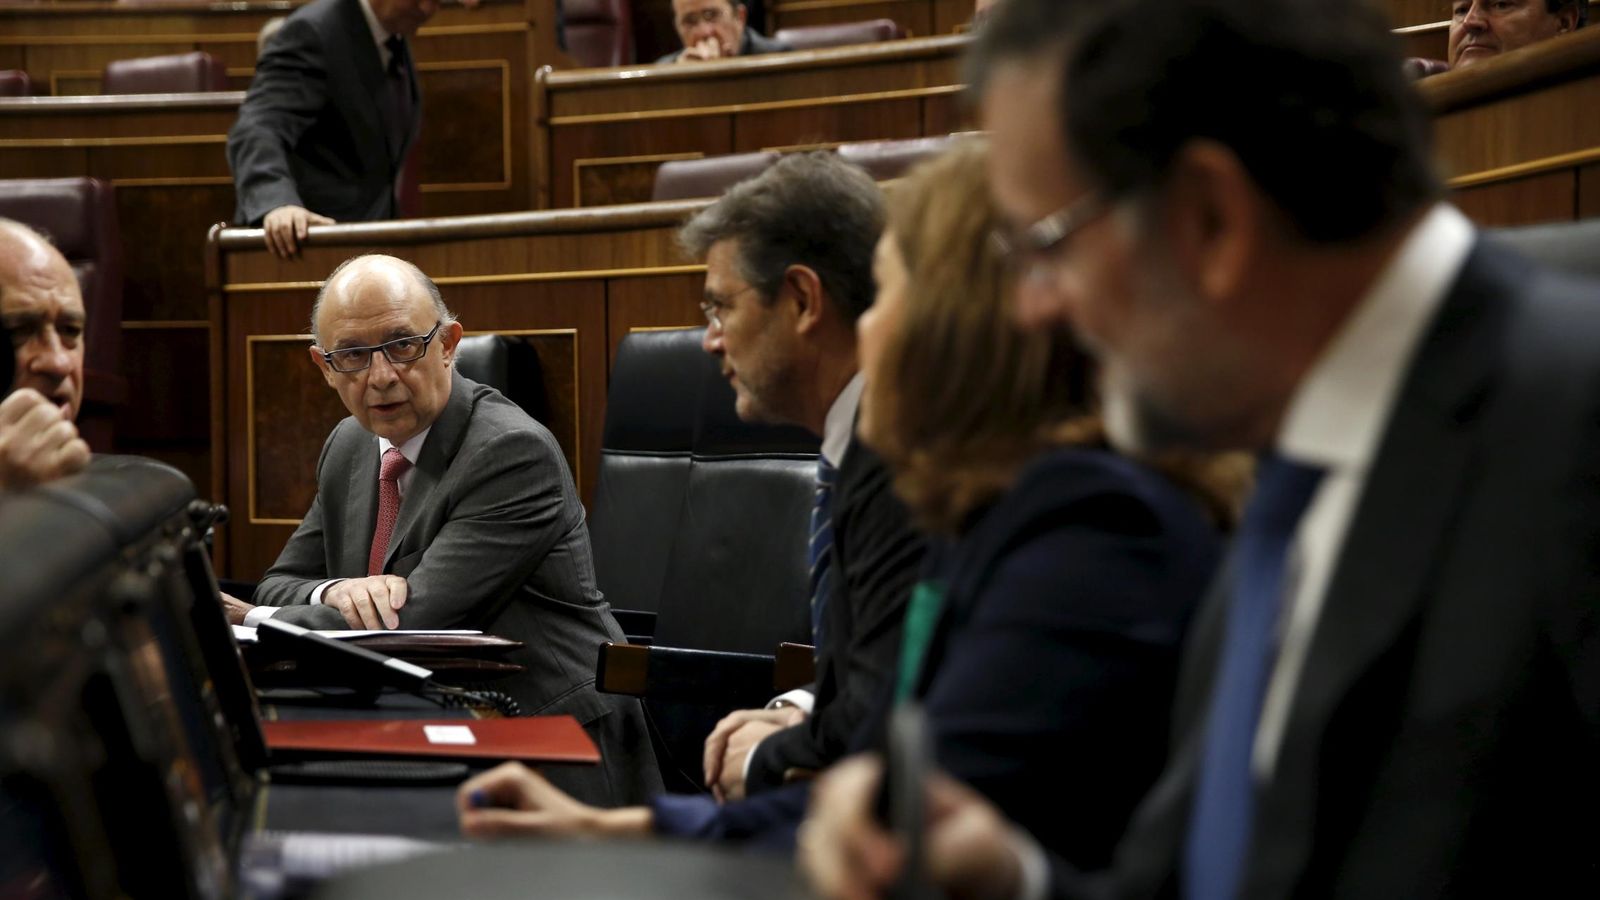 Foto: El ministro de Hacienda Cristóbal Montoro junto al presidente del Gobierno Mariano Rajoy durante la sesión de control (Reuters)